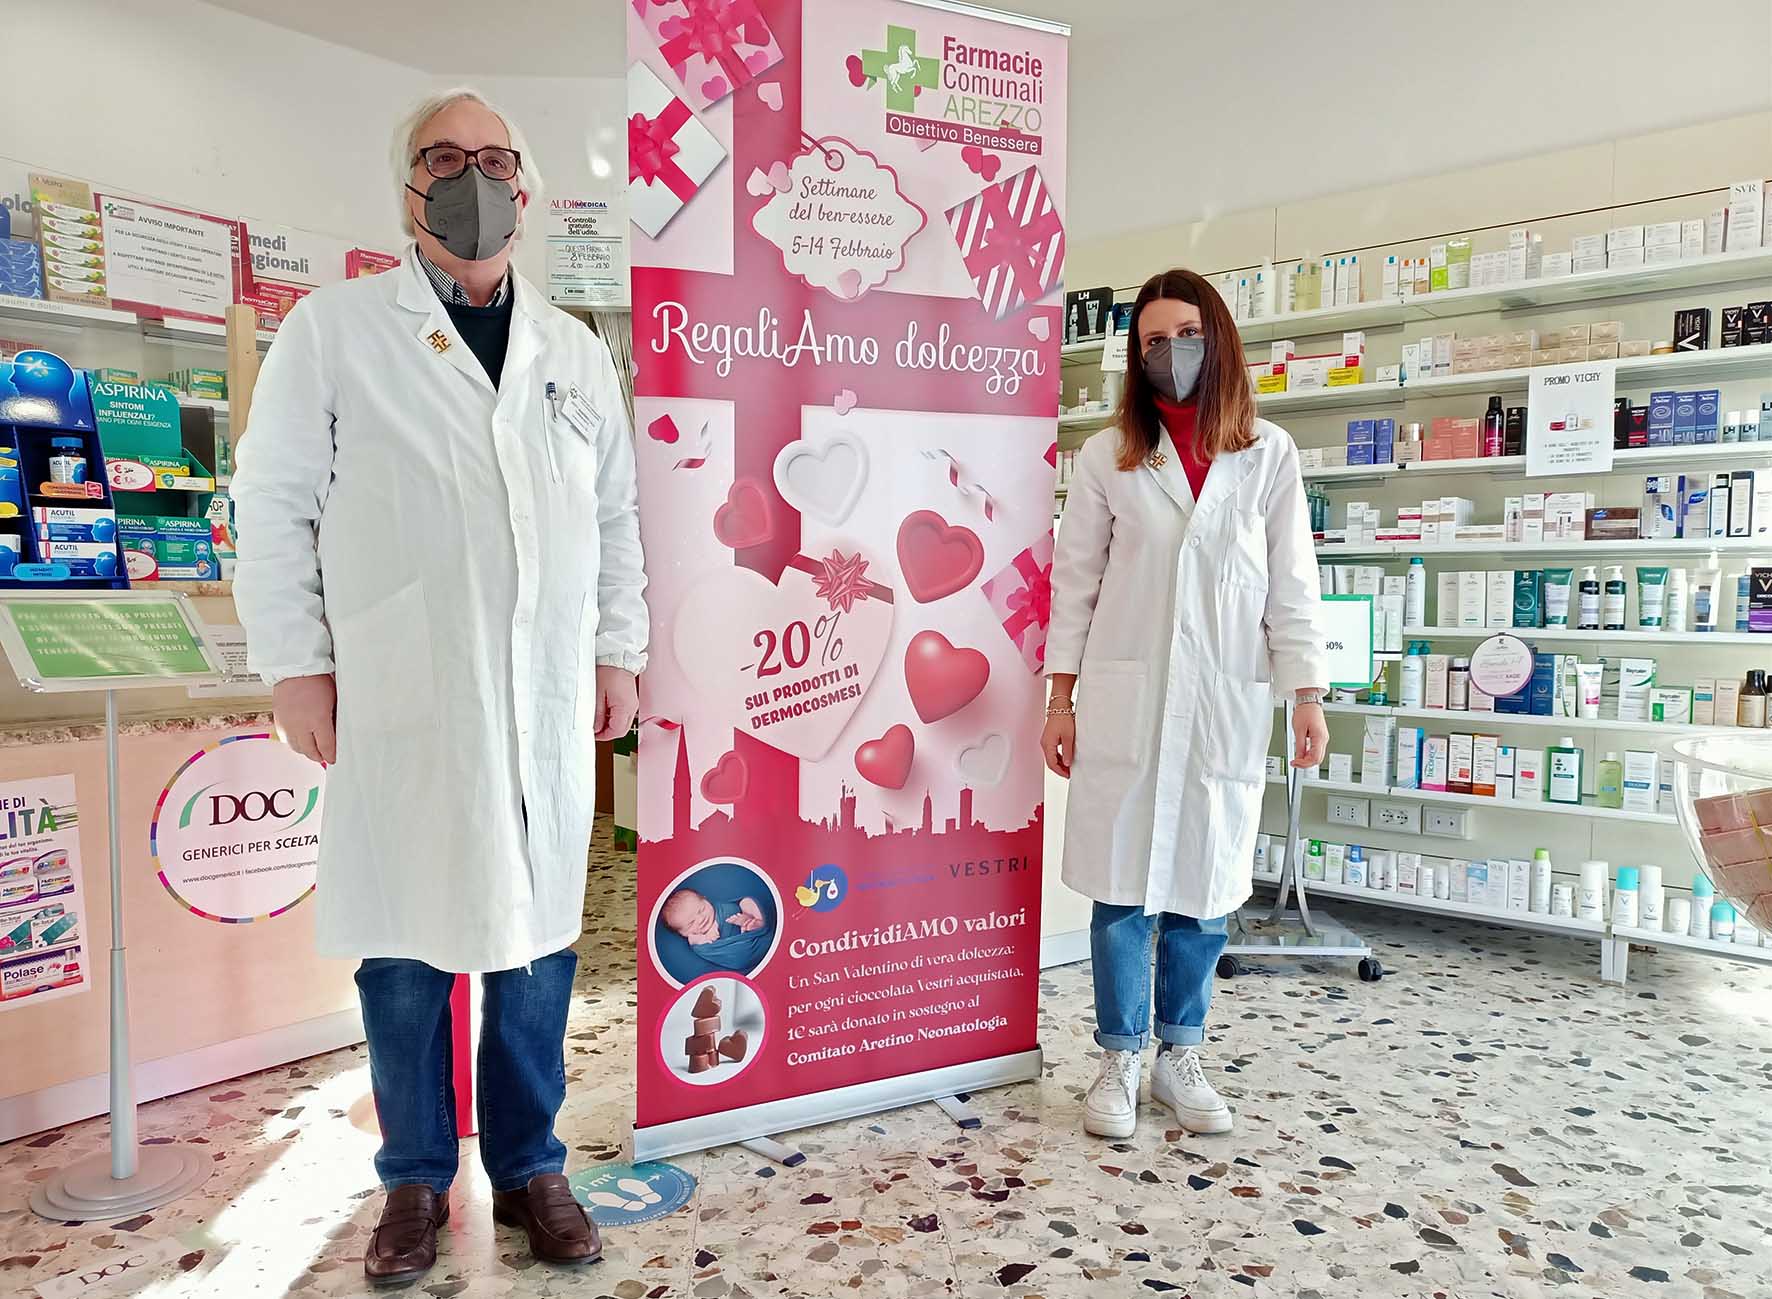 “RegaliAmo dolcezza”, le Farmacie Comunali al fianco del Comitato Aretino Neonatologia